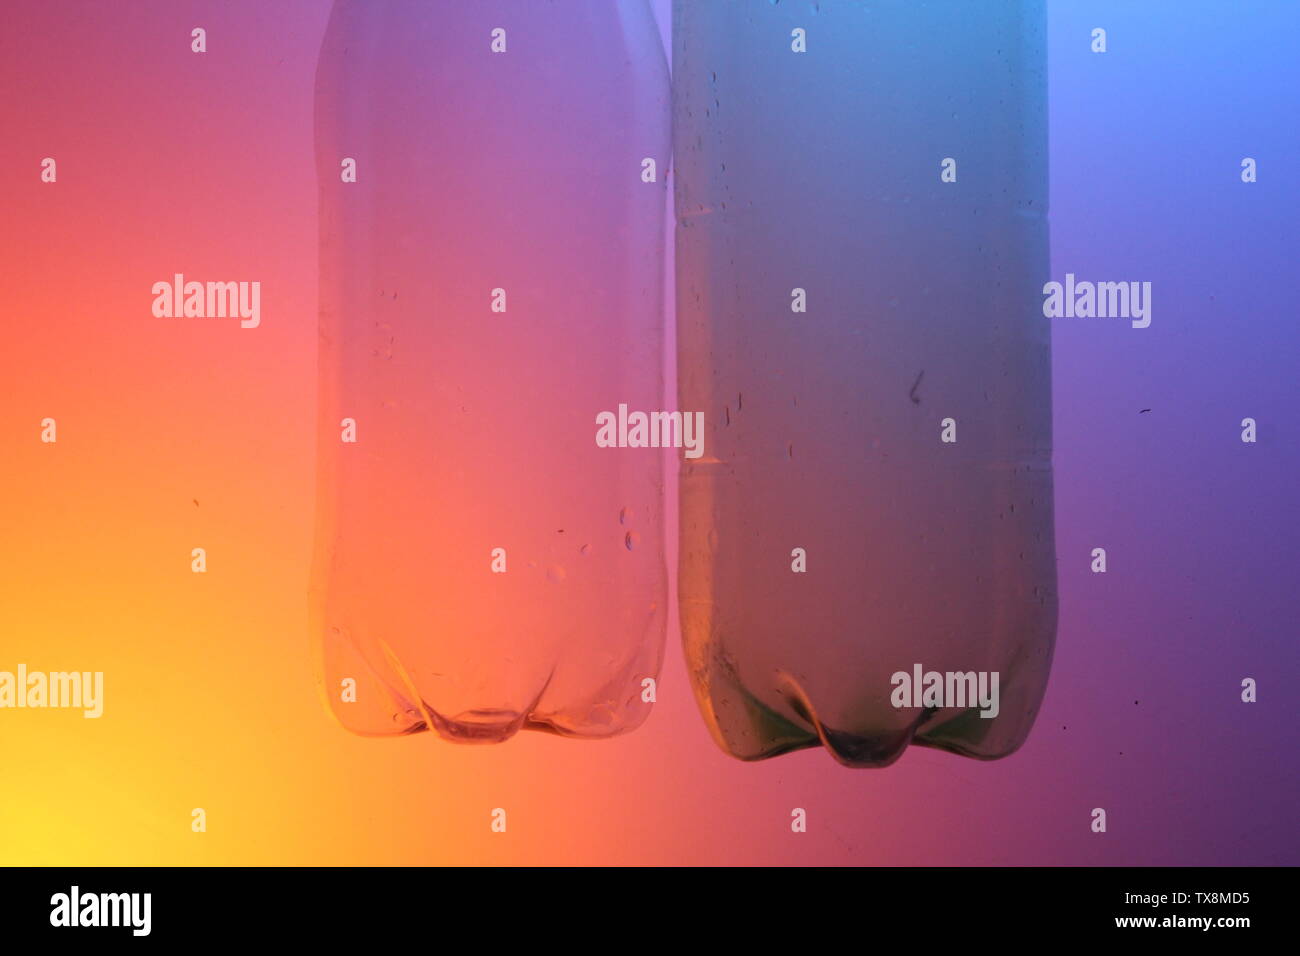 Nahaufnahme von klaren Flaschen auf einem farbigen Hintergrund mit künstlicher Beleuchtung Stockfoto